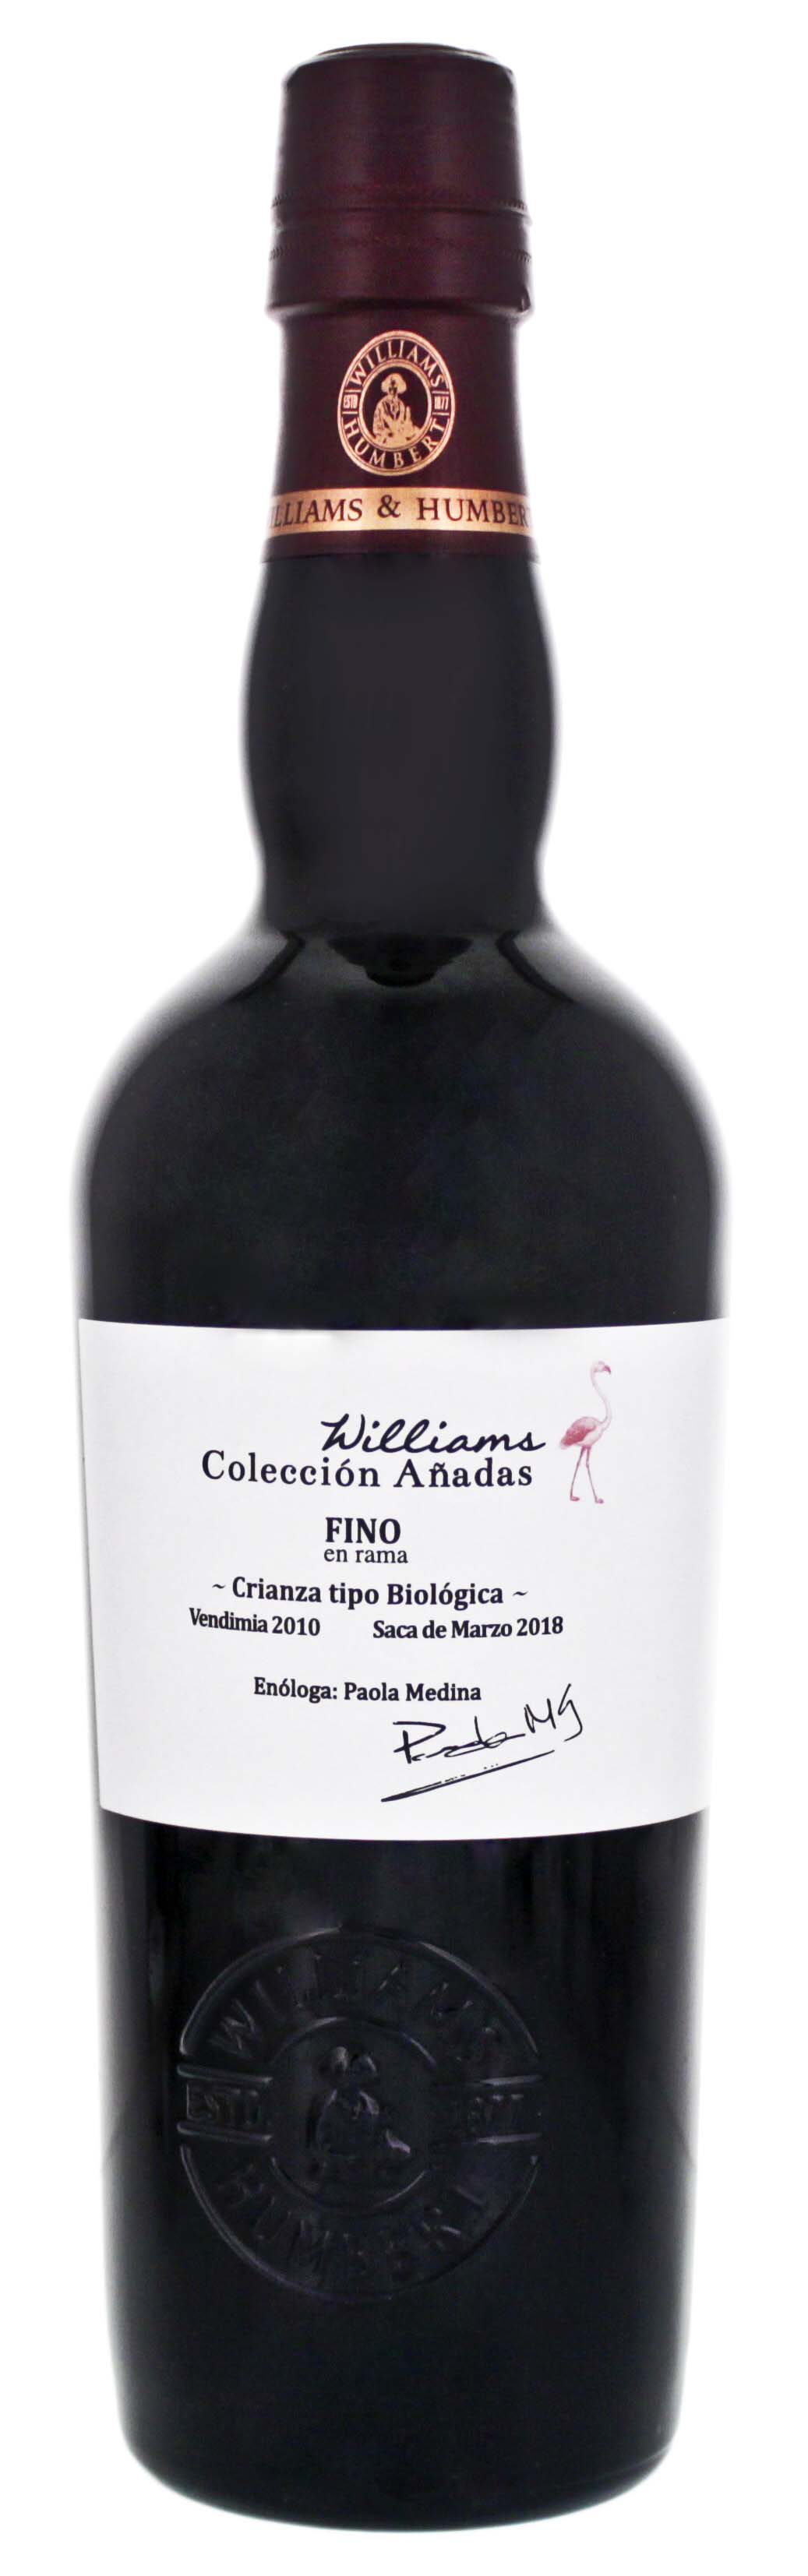 Williams Coleccion Anadas Fino En Rama 2010 Sherry 0,5L